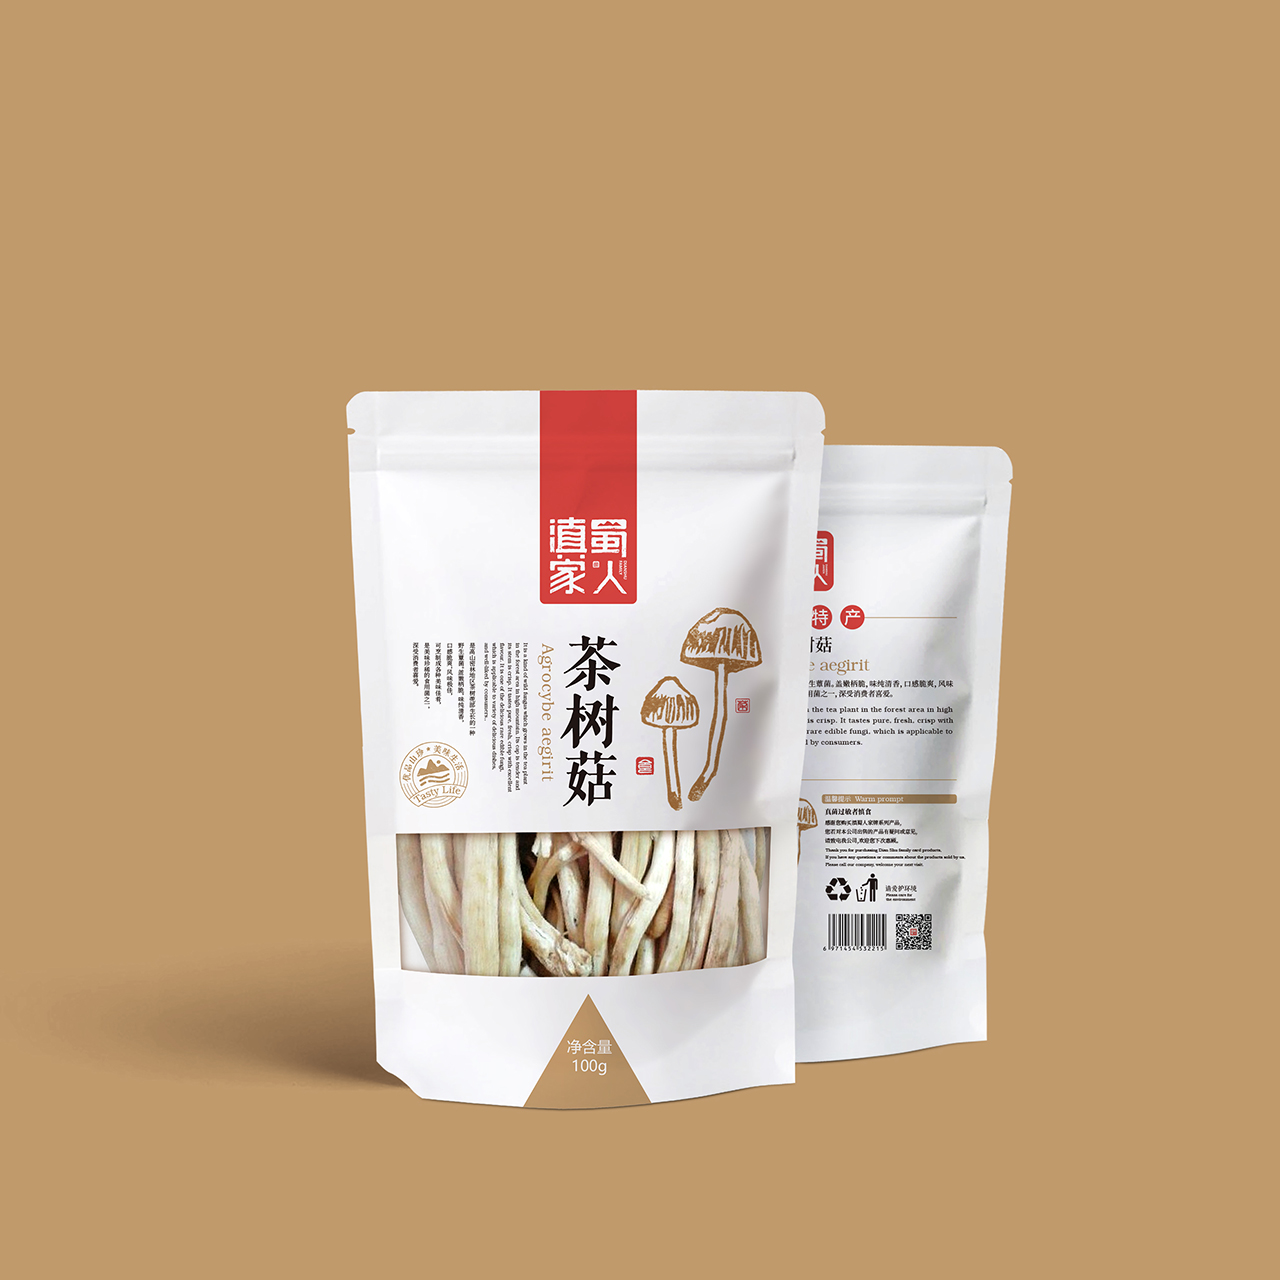 野生菌品牌包装设计—意形社